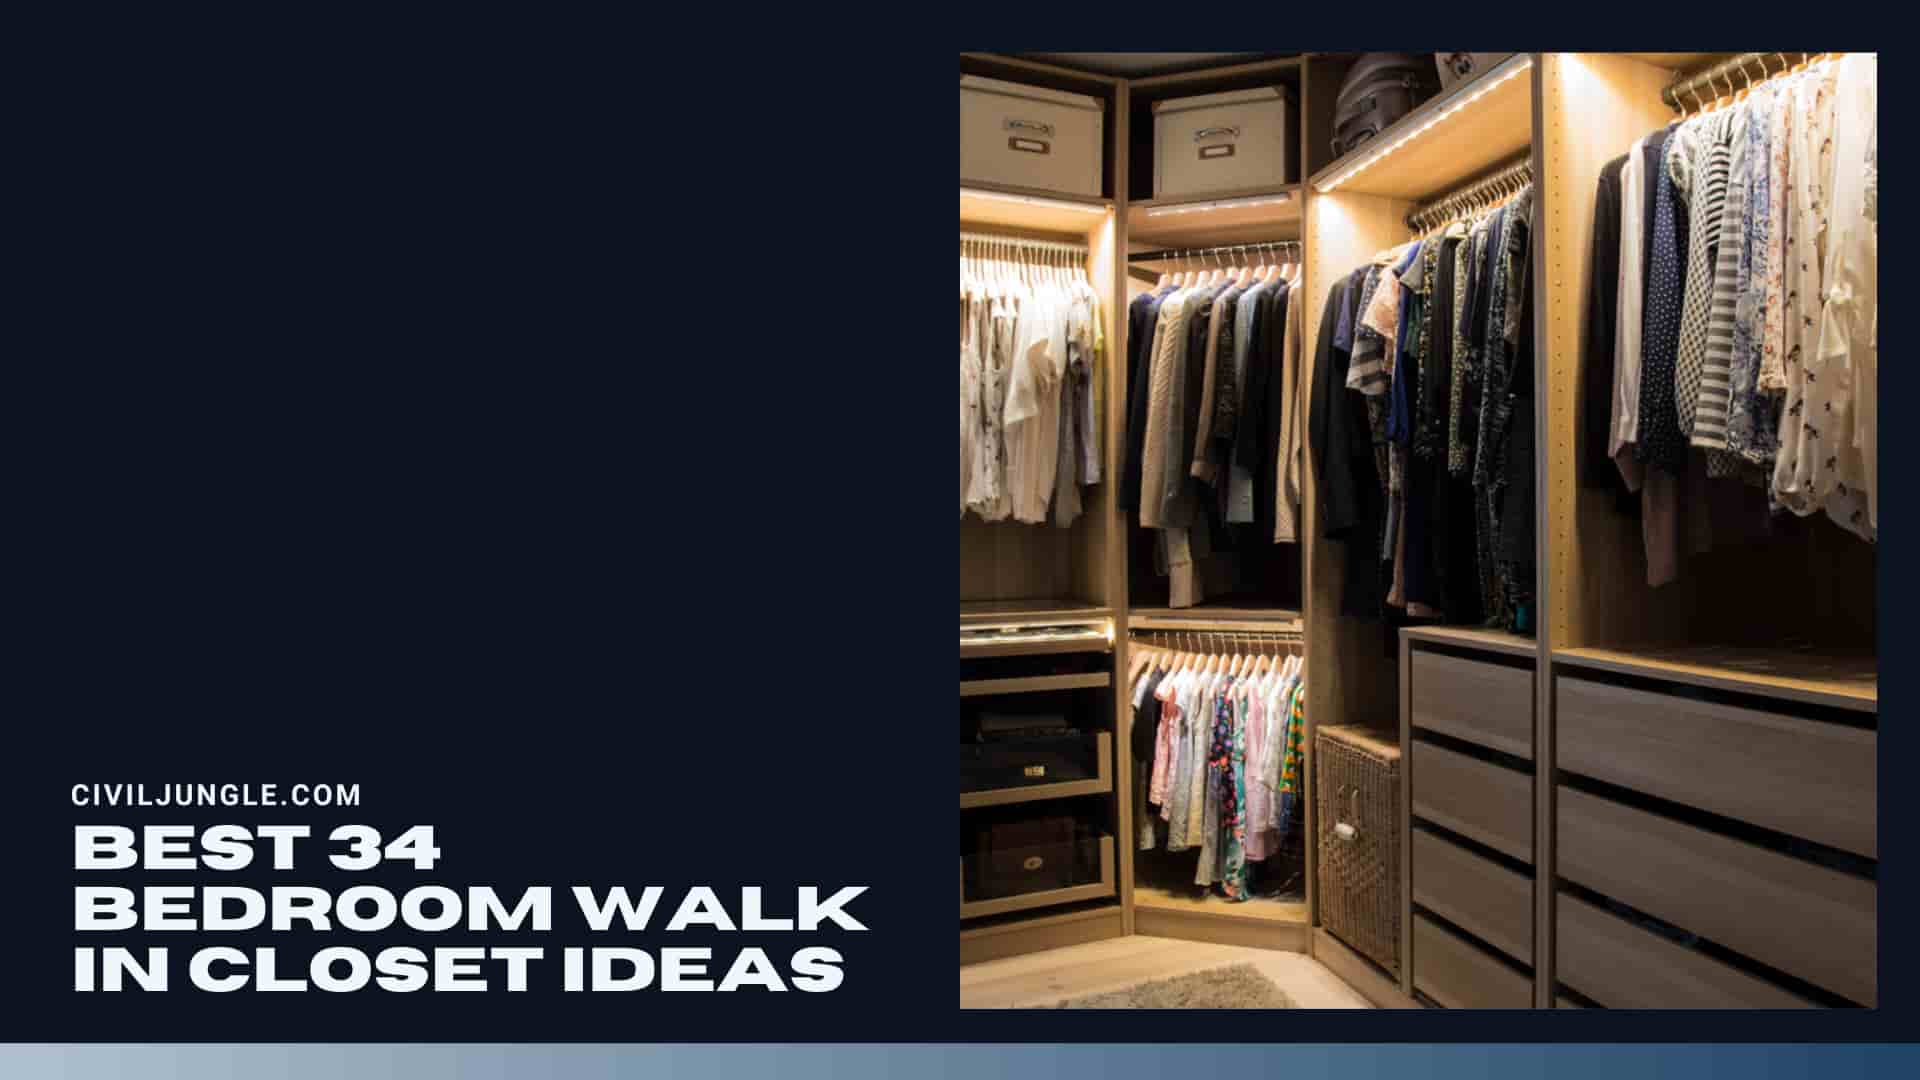 Best 34 Bedroom Walk in Closet Ideas